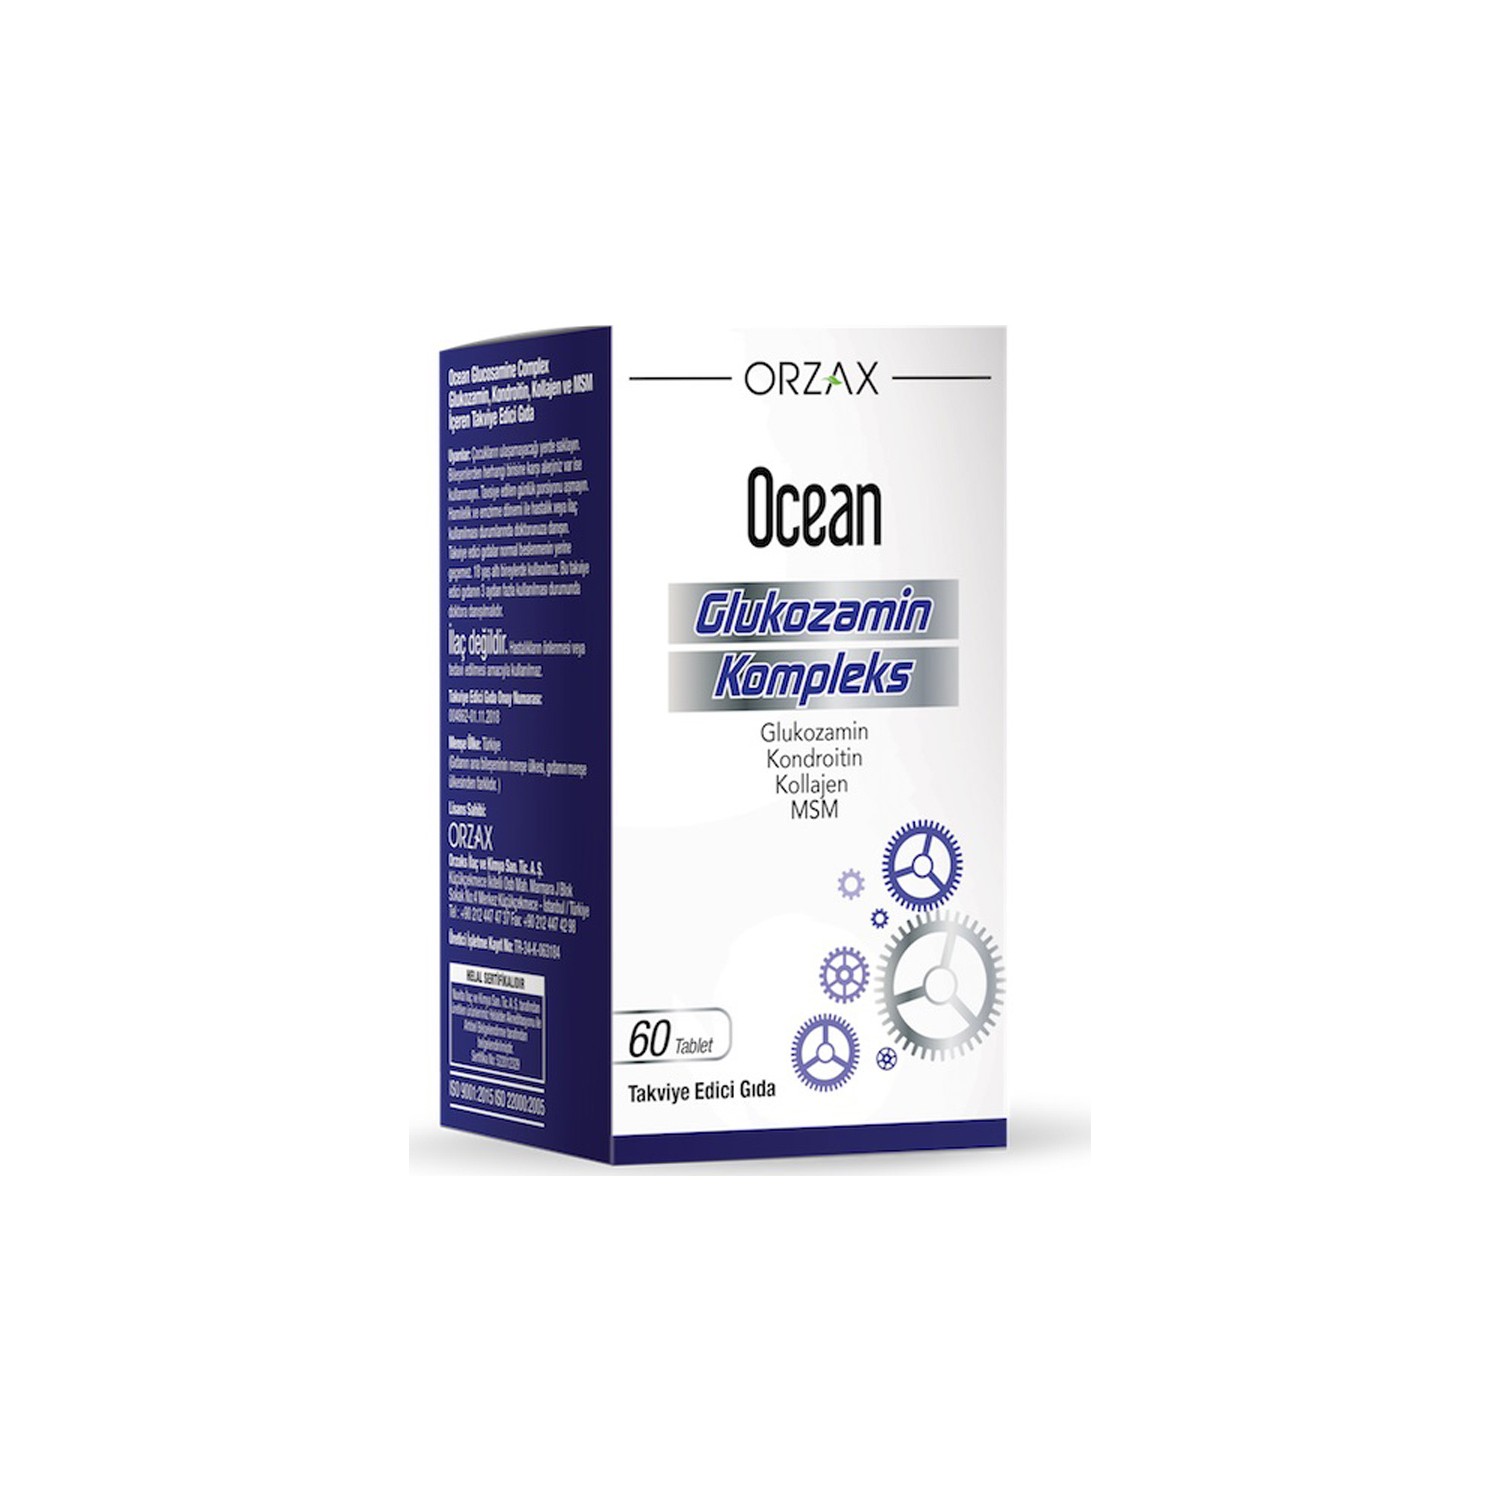 Глюкозаминовый комплекс Orzax Ocean, 60 таблеток глюкозаминовый комплекс orzax ocean 3 упаковки по 60 таблеток